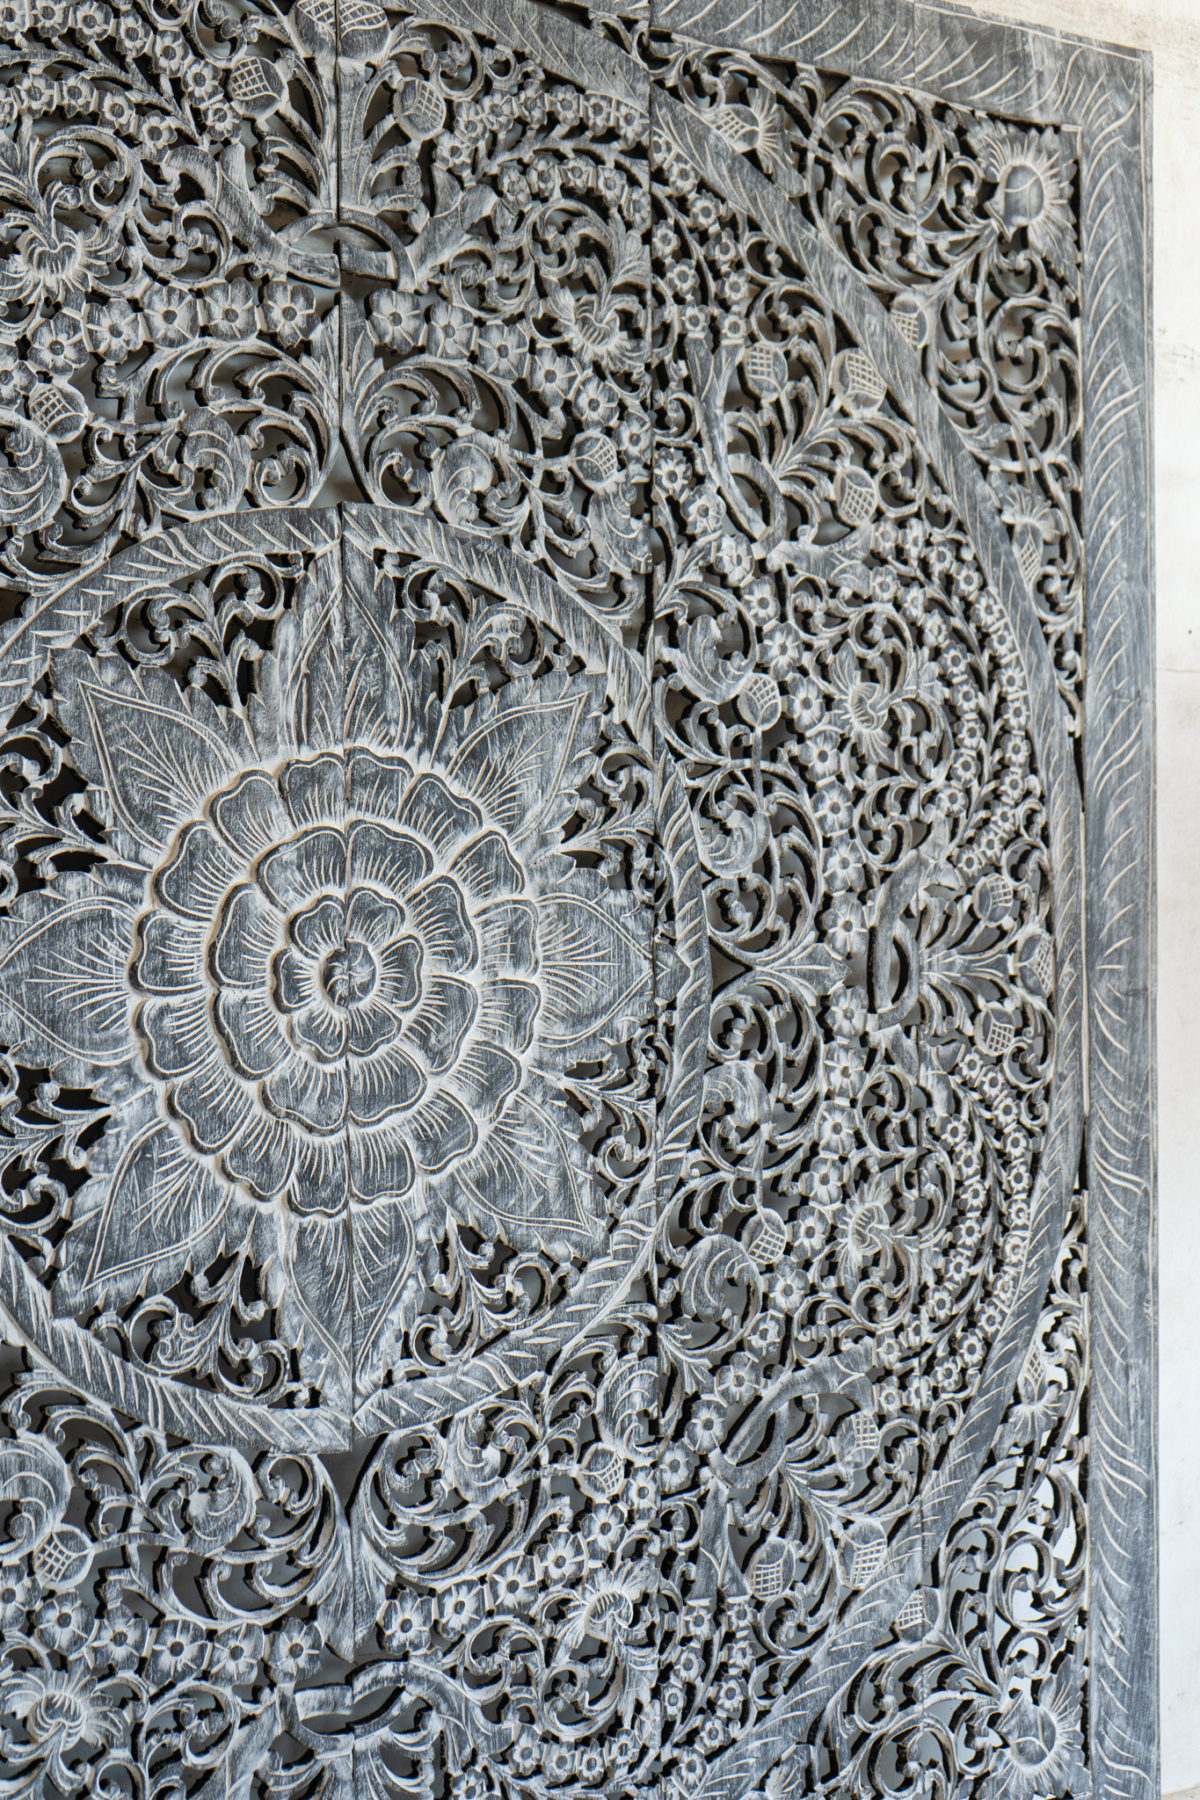 Mandala wall carving